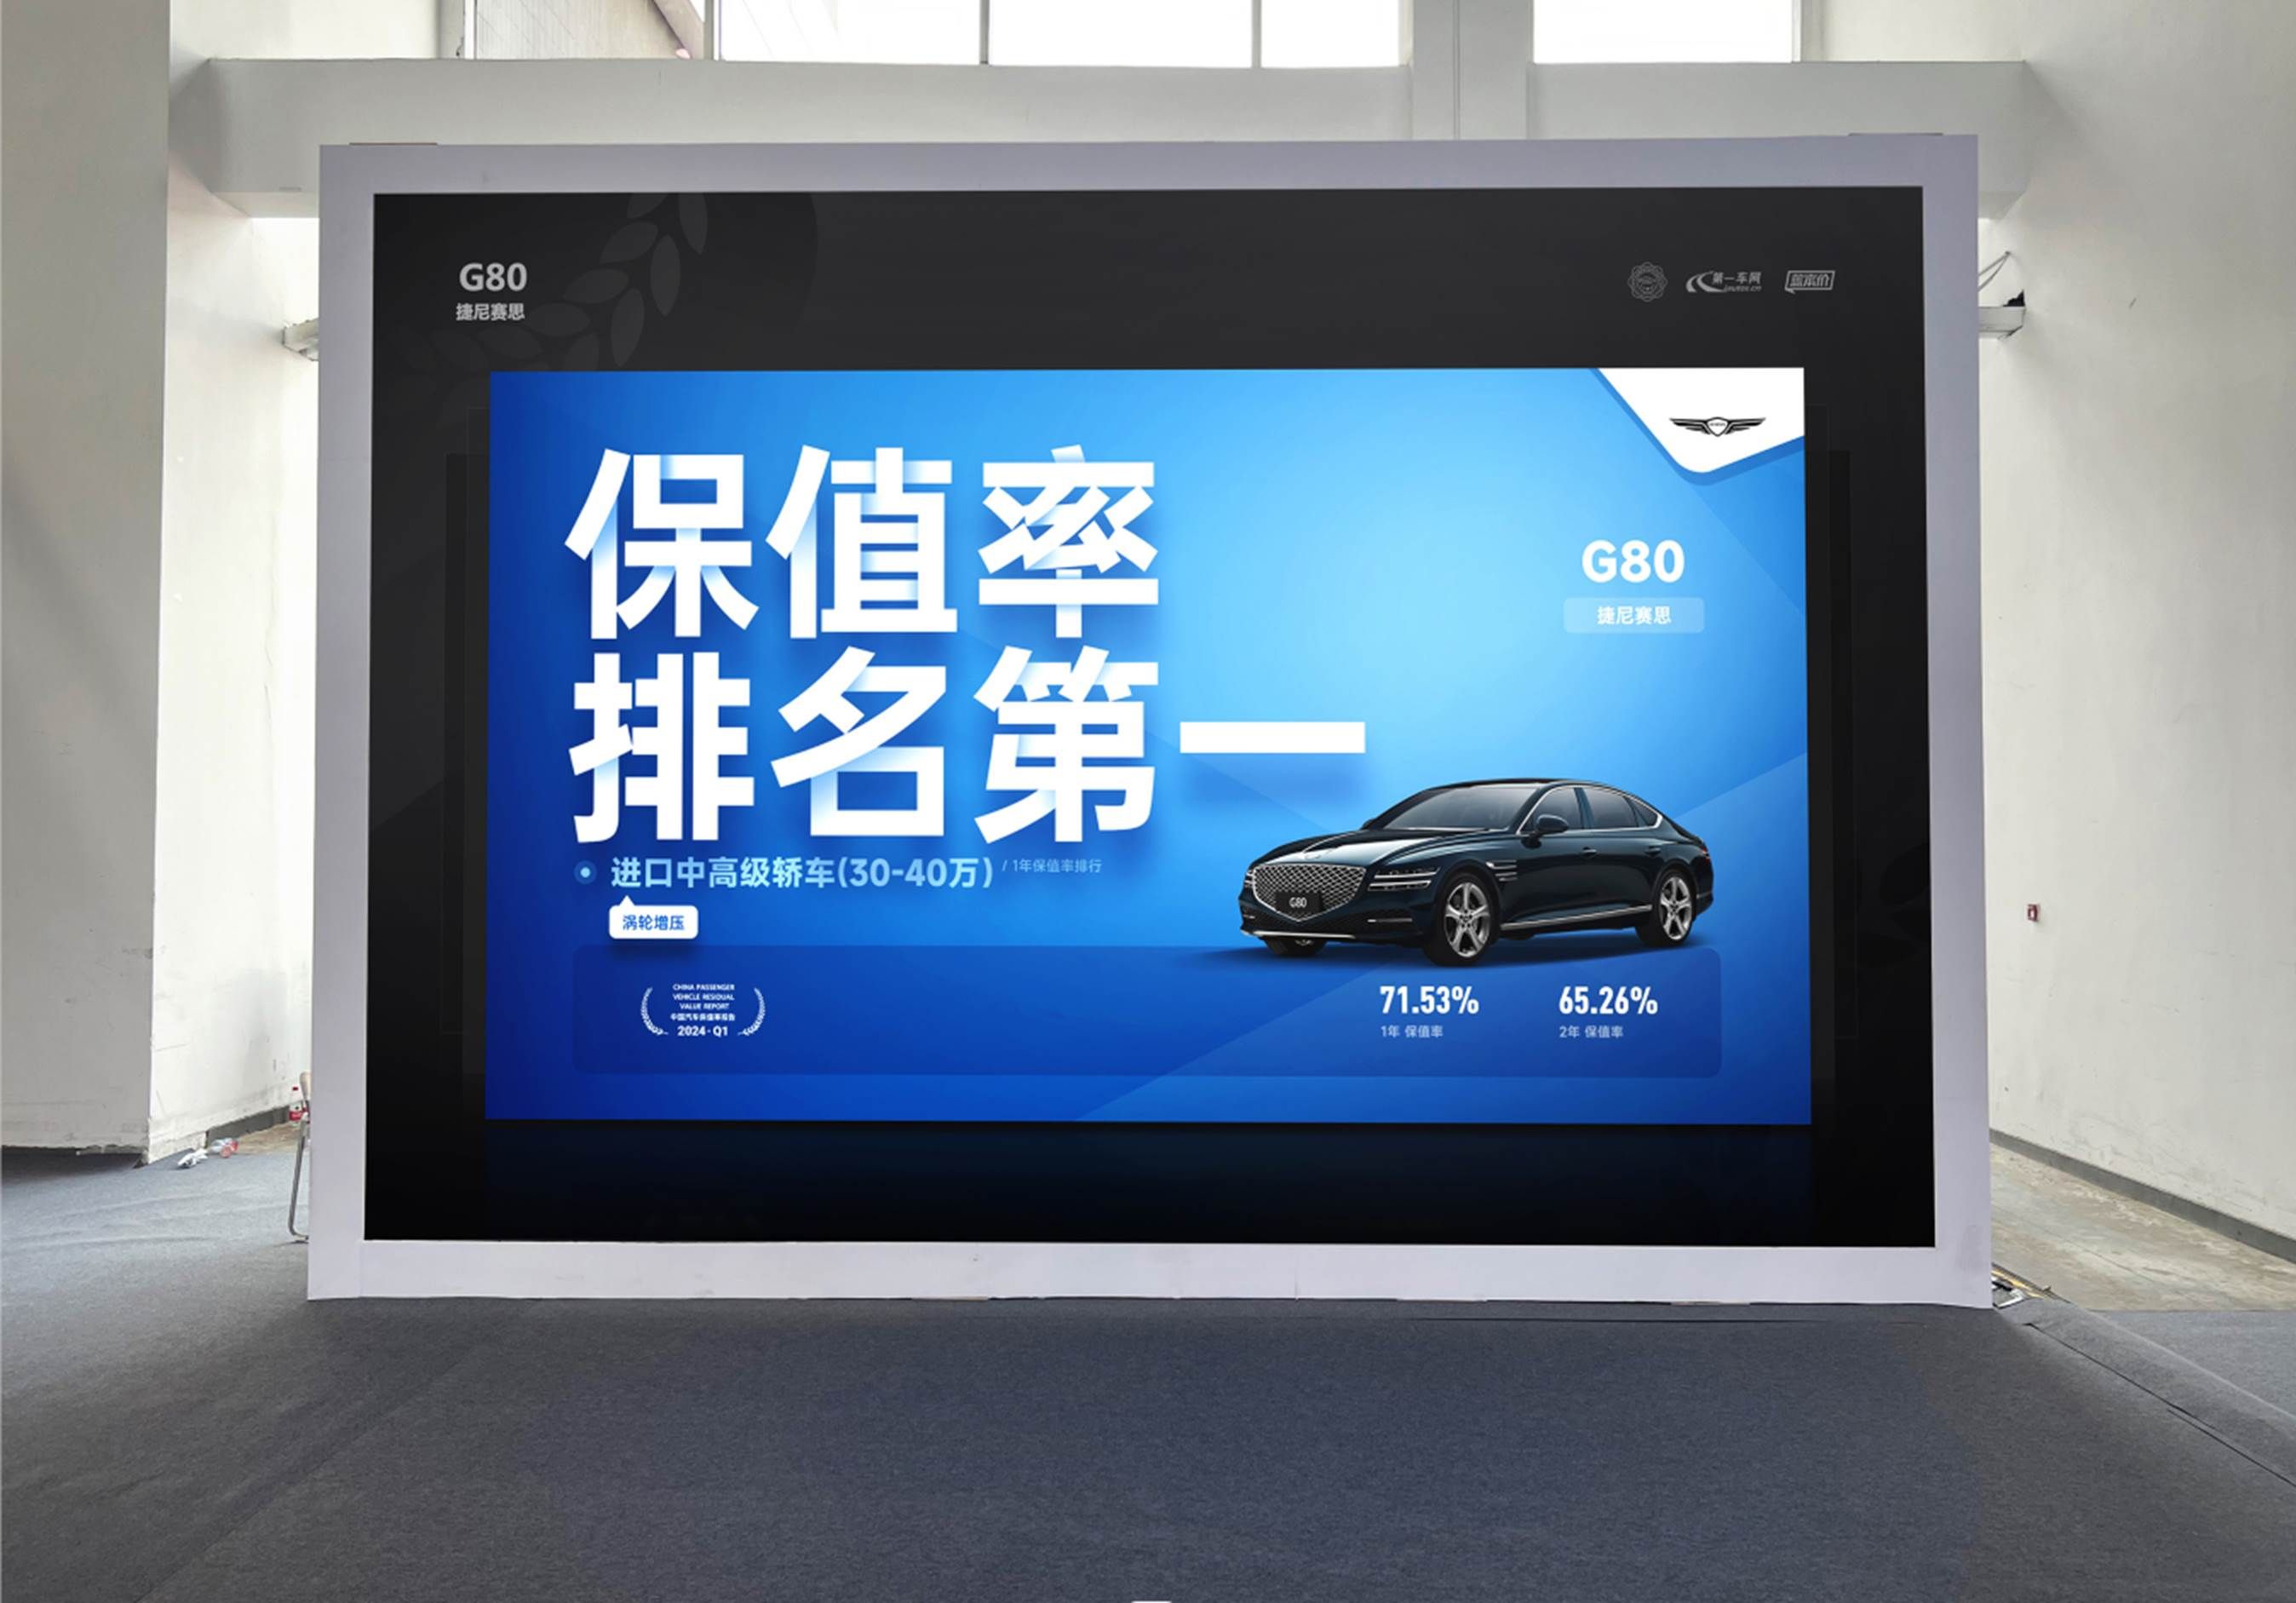 汽车金融暨保值率研究委员会发布2024年Q1中国汽车保值率报告